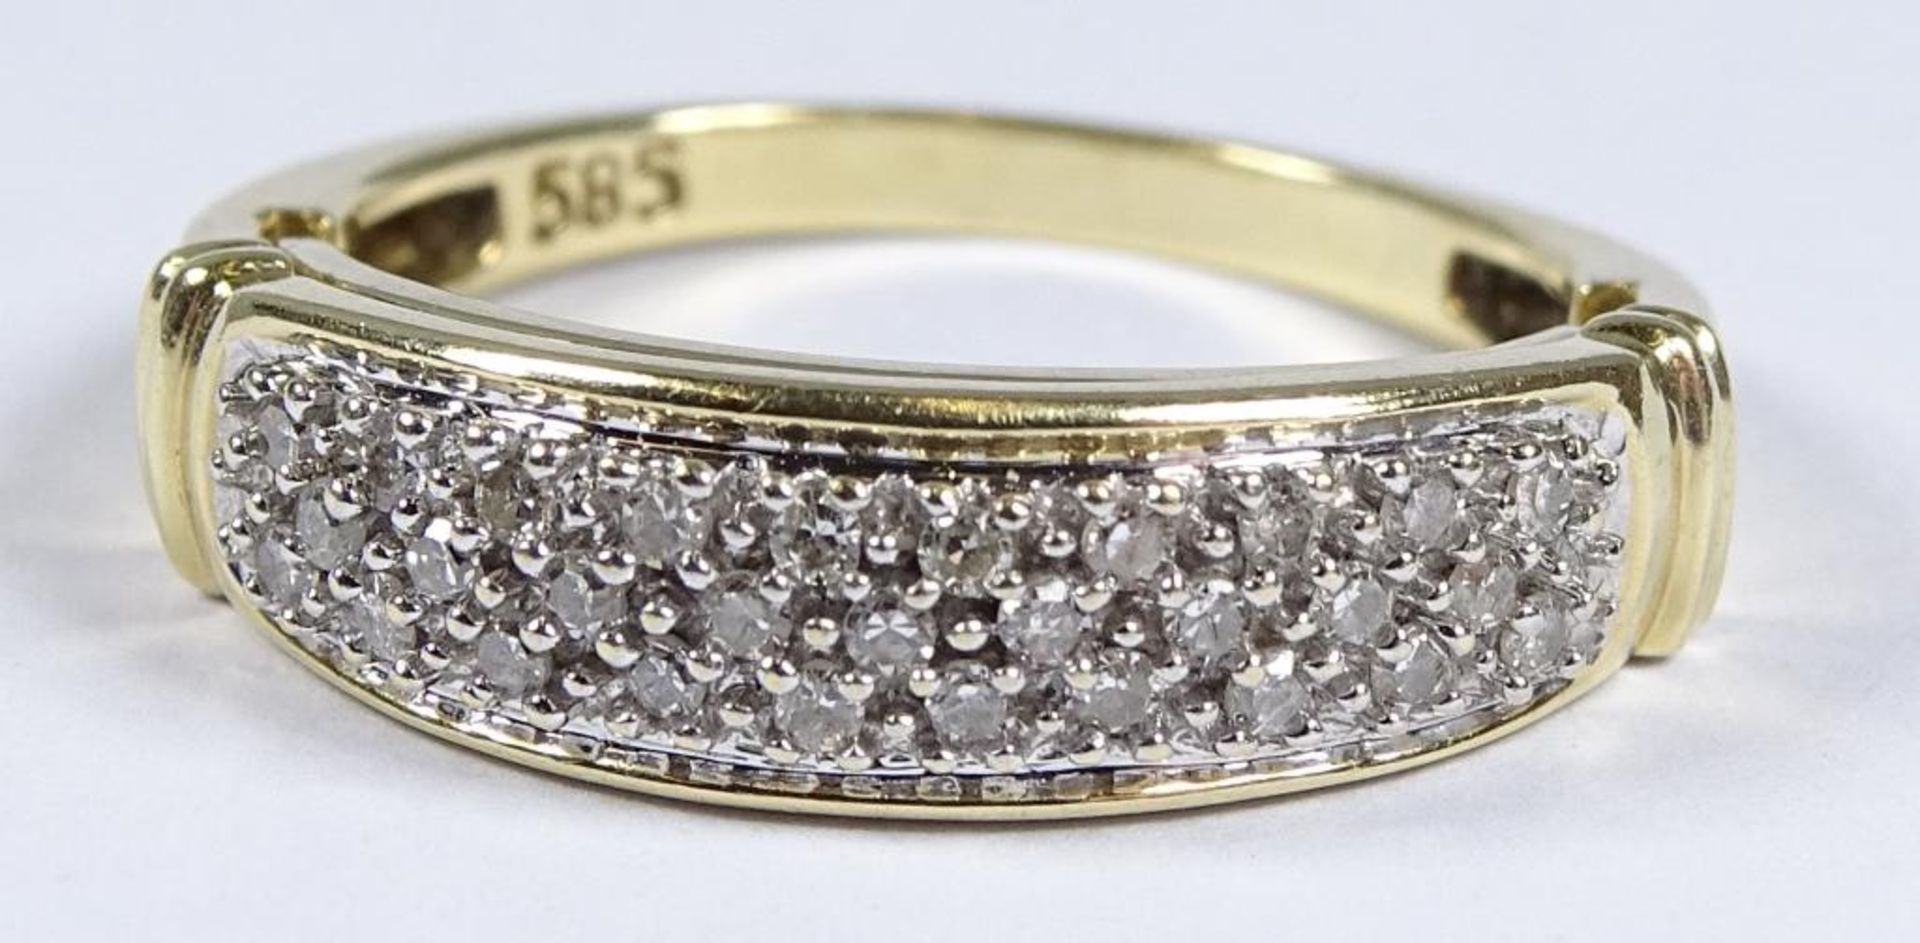 Goldring 585/000, Diamanten, innere Schiene beweglich "I Love you",4,5gr., RG 56 - Bild 3 aus 7